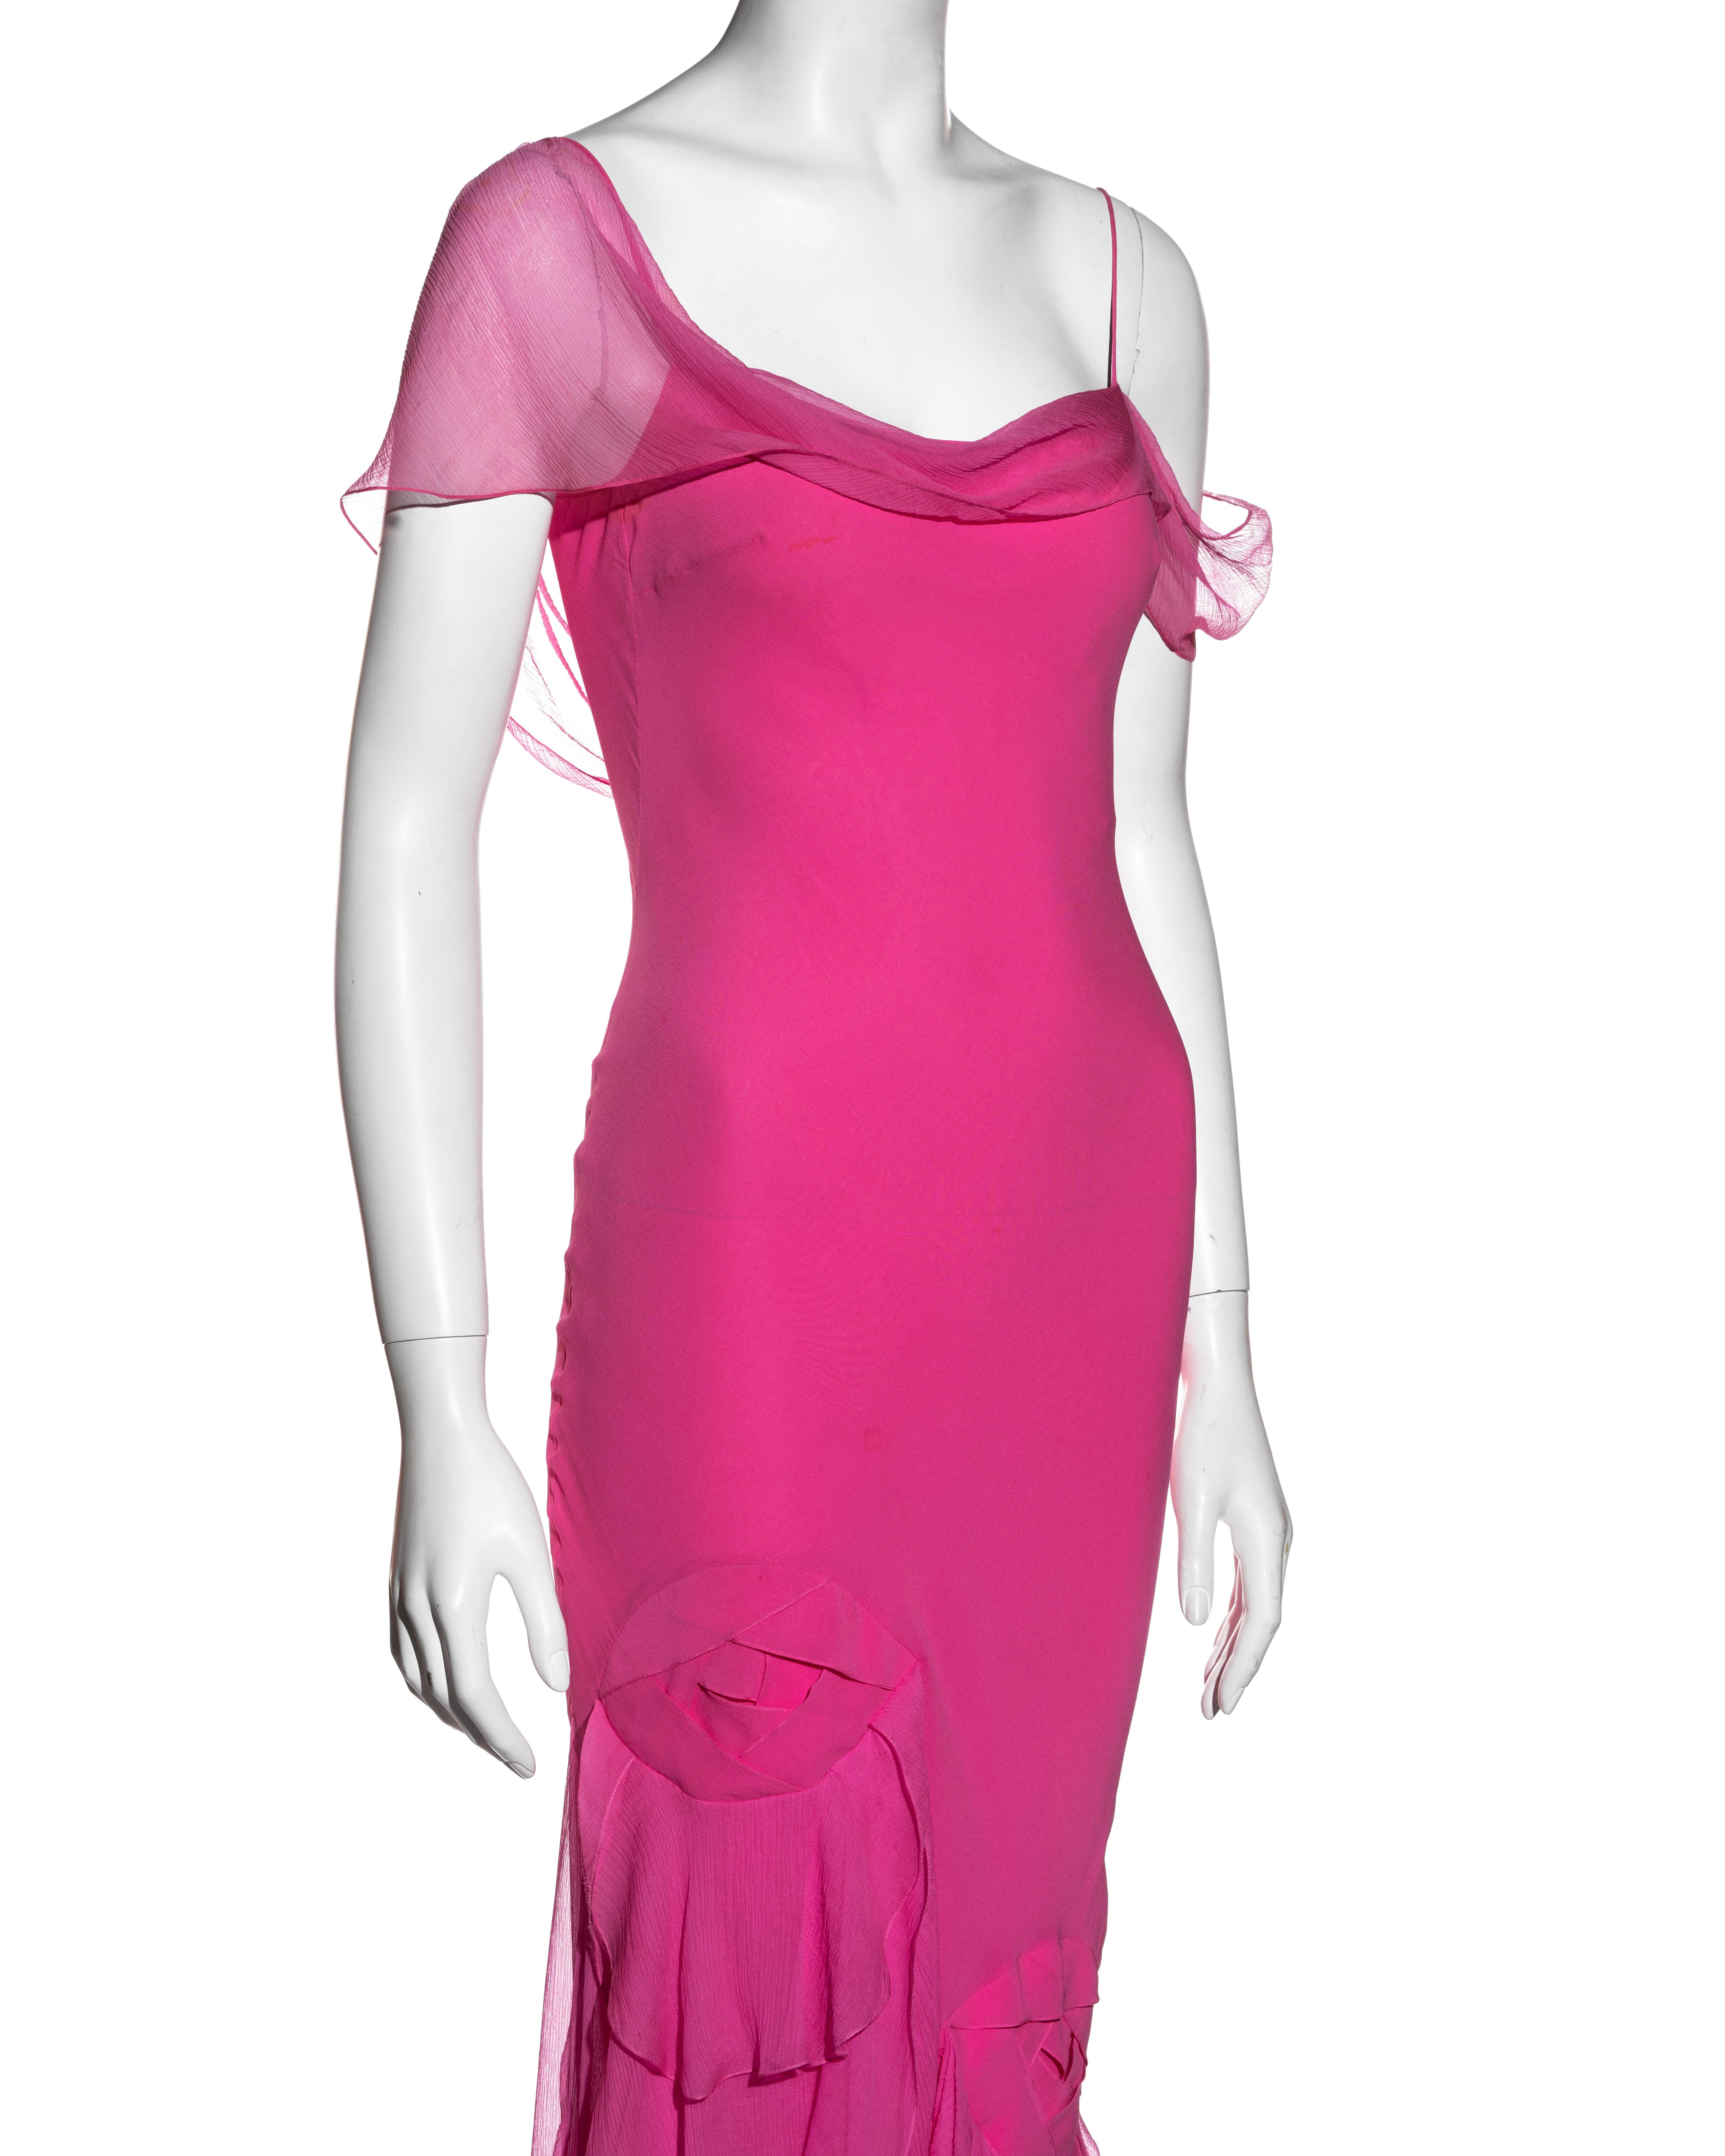 Women's John Galliano hot pink silk chiffon bias cut evening dress, ss 2004